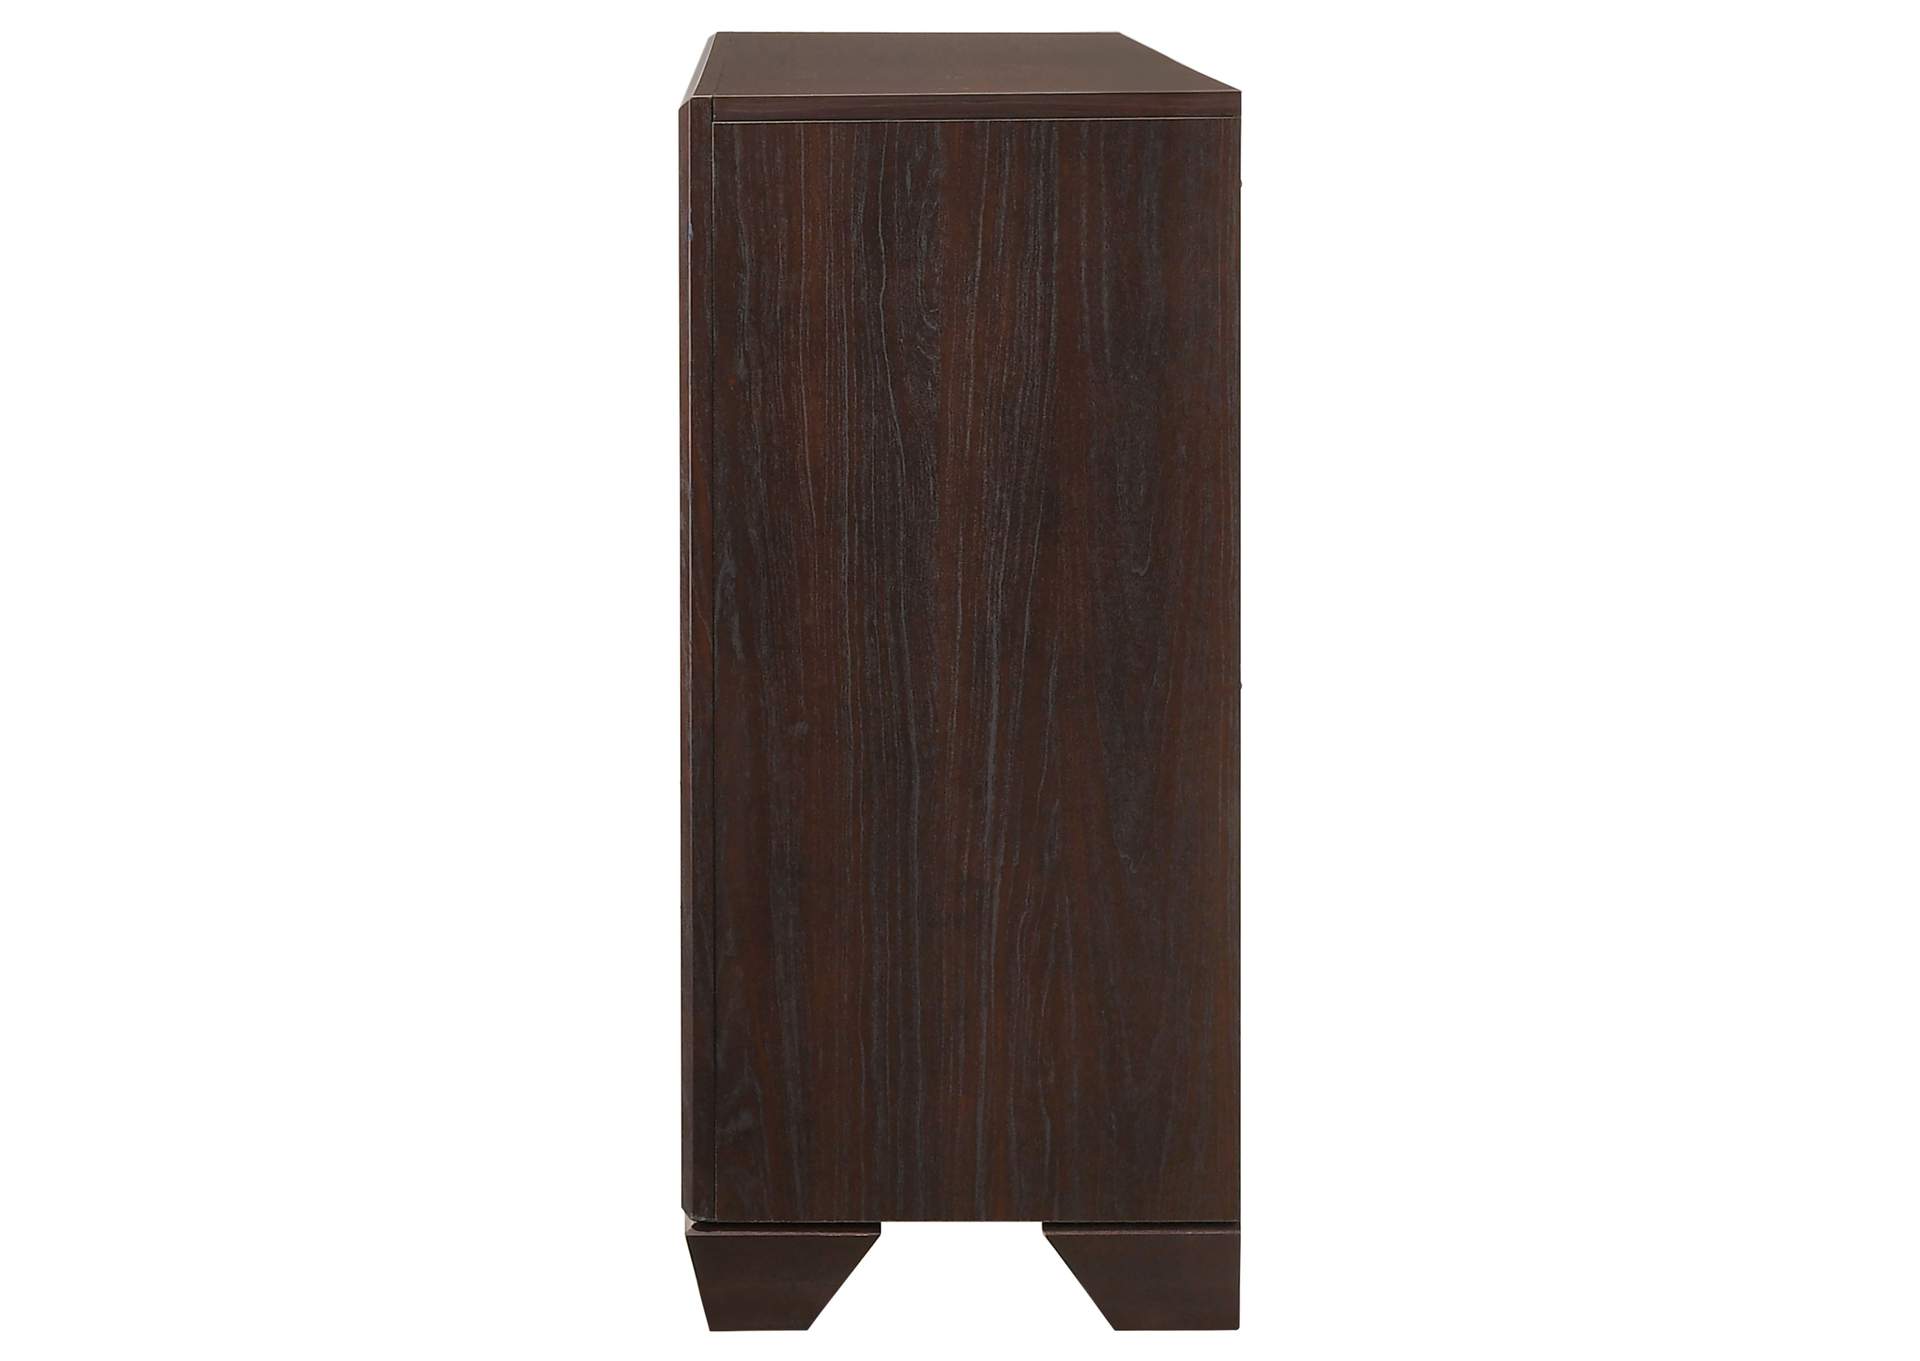 Kauffman 6-drawer Dresser Dark Cocoa,Coaster Furniture